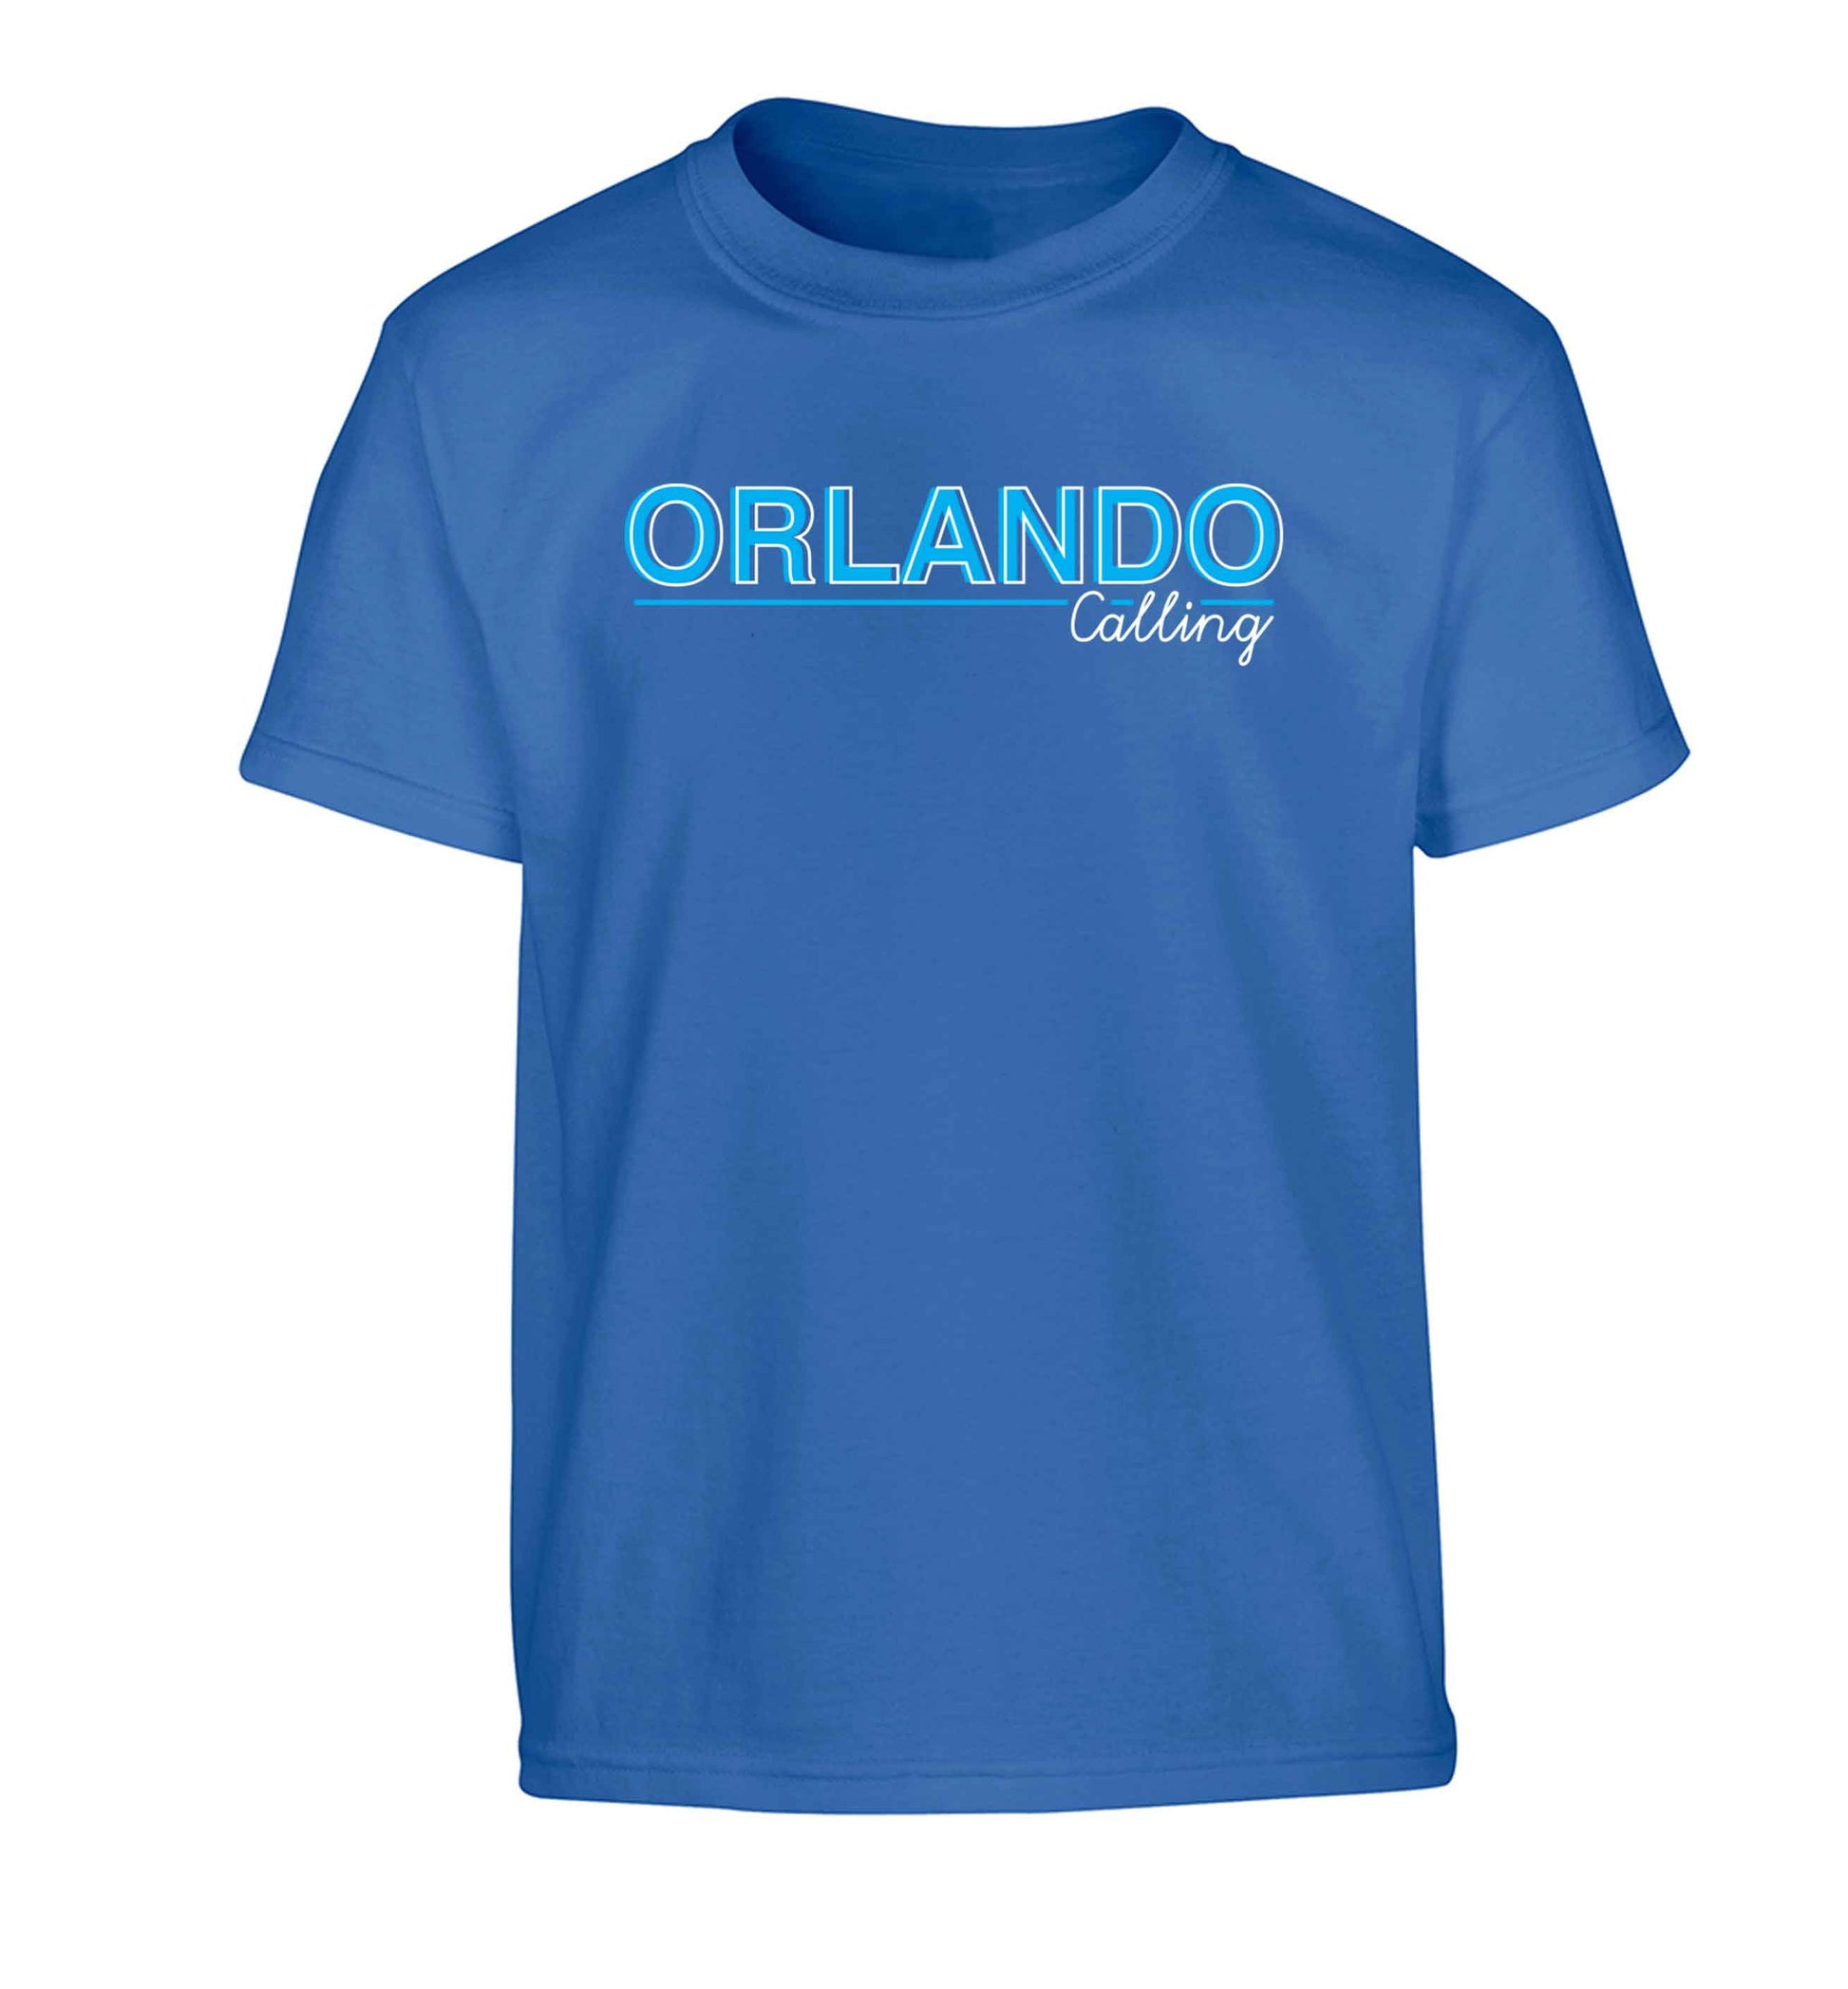 Orlando calling Children's blue Tshirt 12-13 Years